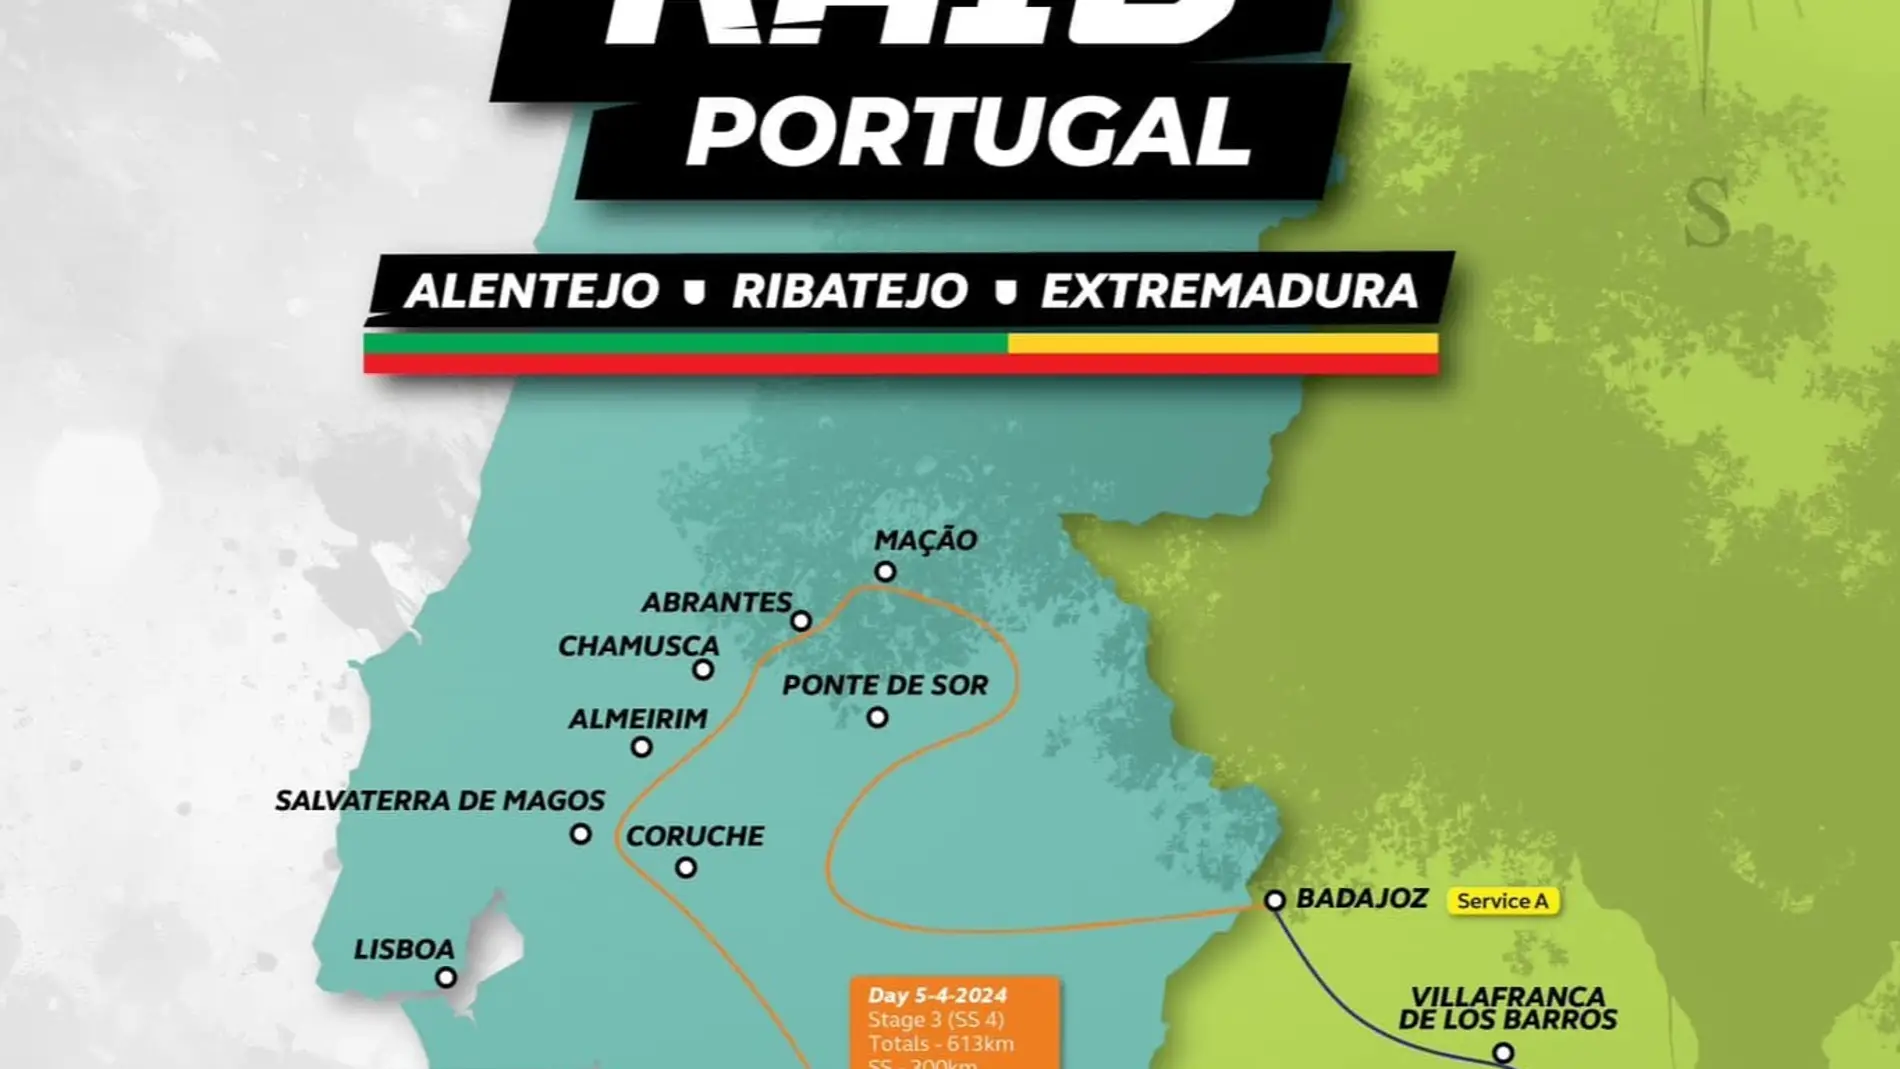 Carlos Sáinz, Sebastièn Loeb y Al-Attiyah disputarán el Ultimate Rallye Raid Portugal-Extremadura